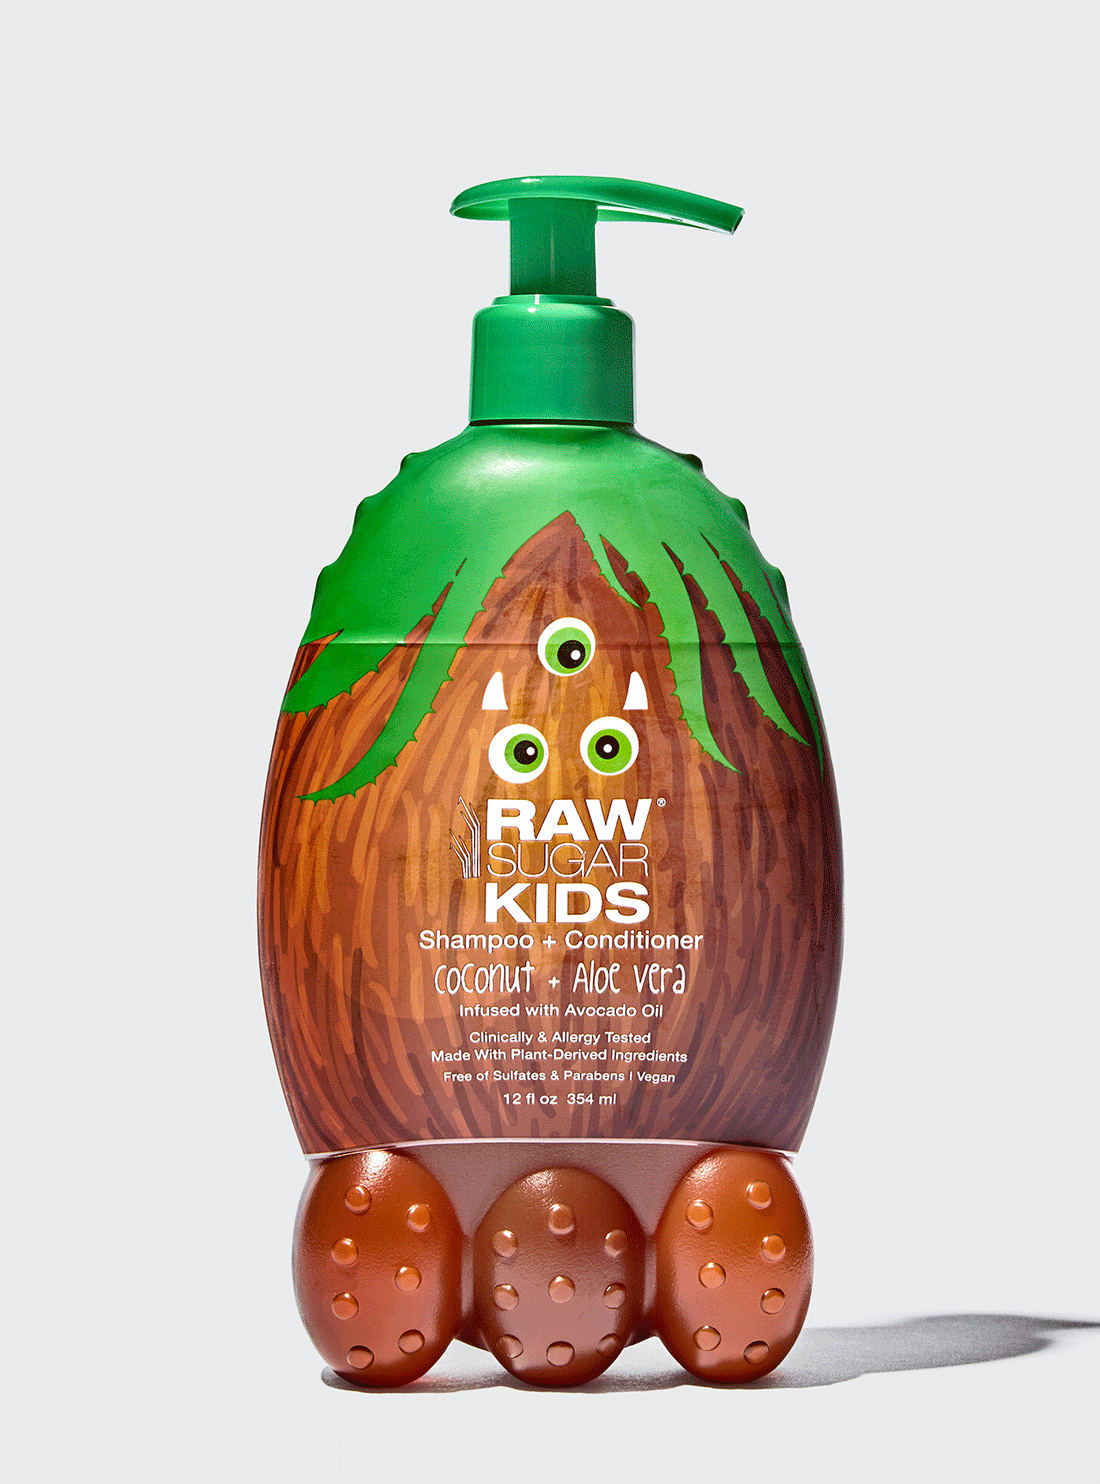 Kids' 2-in-1 Shampoo + Conditioner, Coconut + Aloe Vera